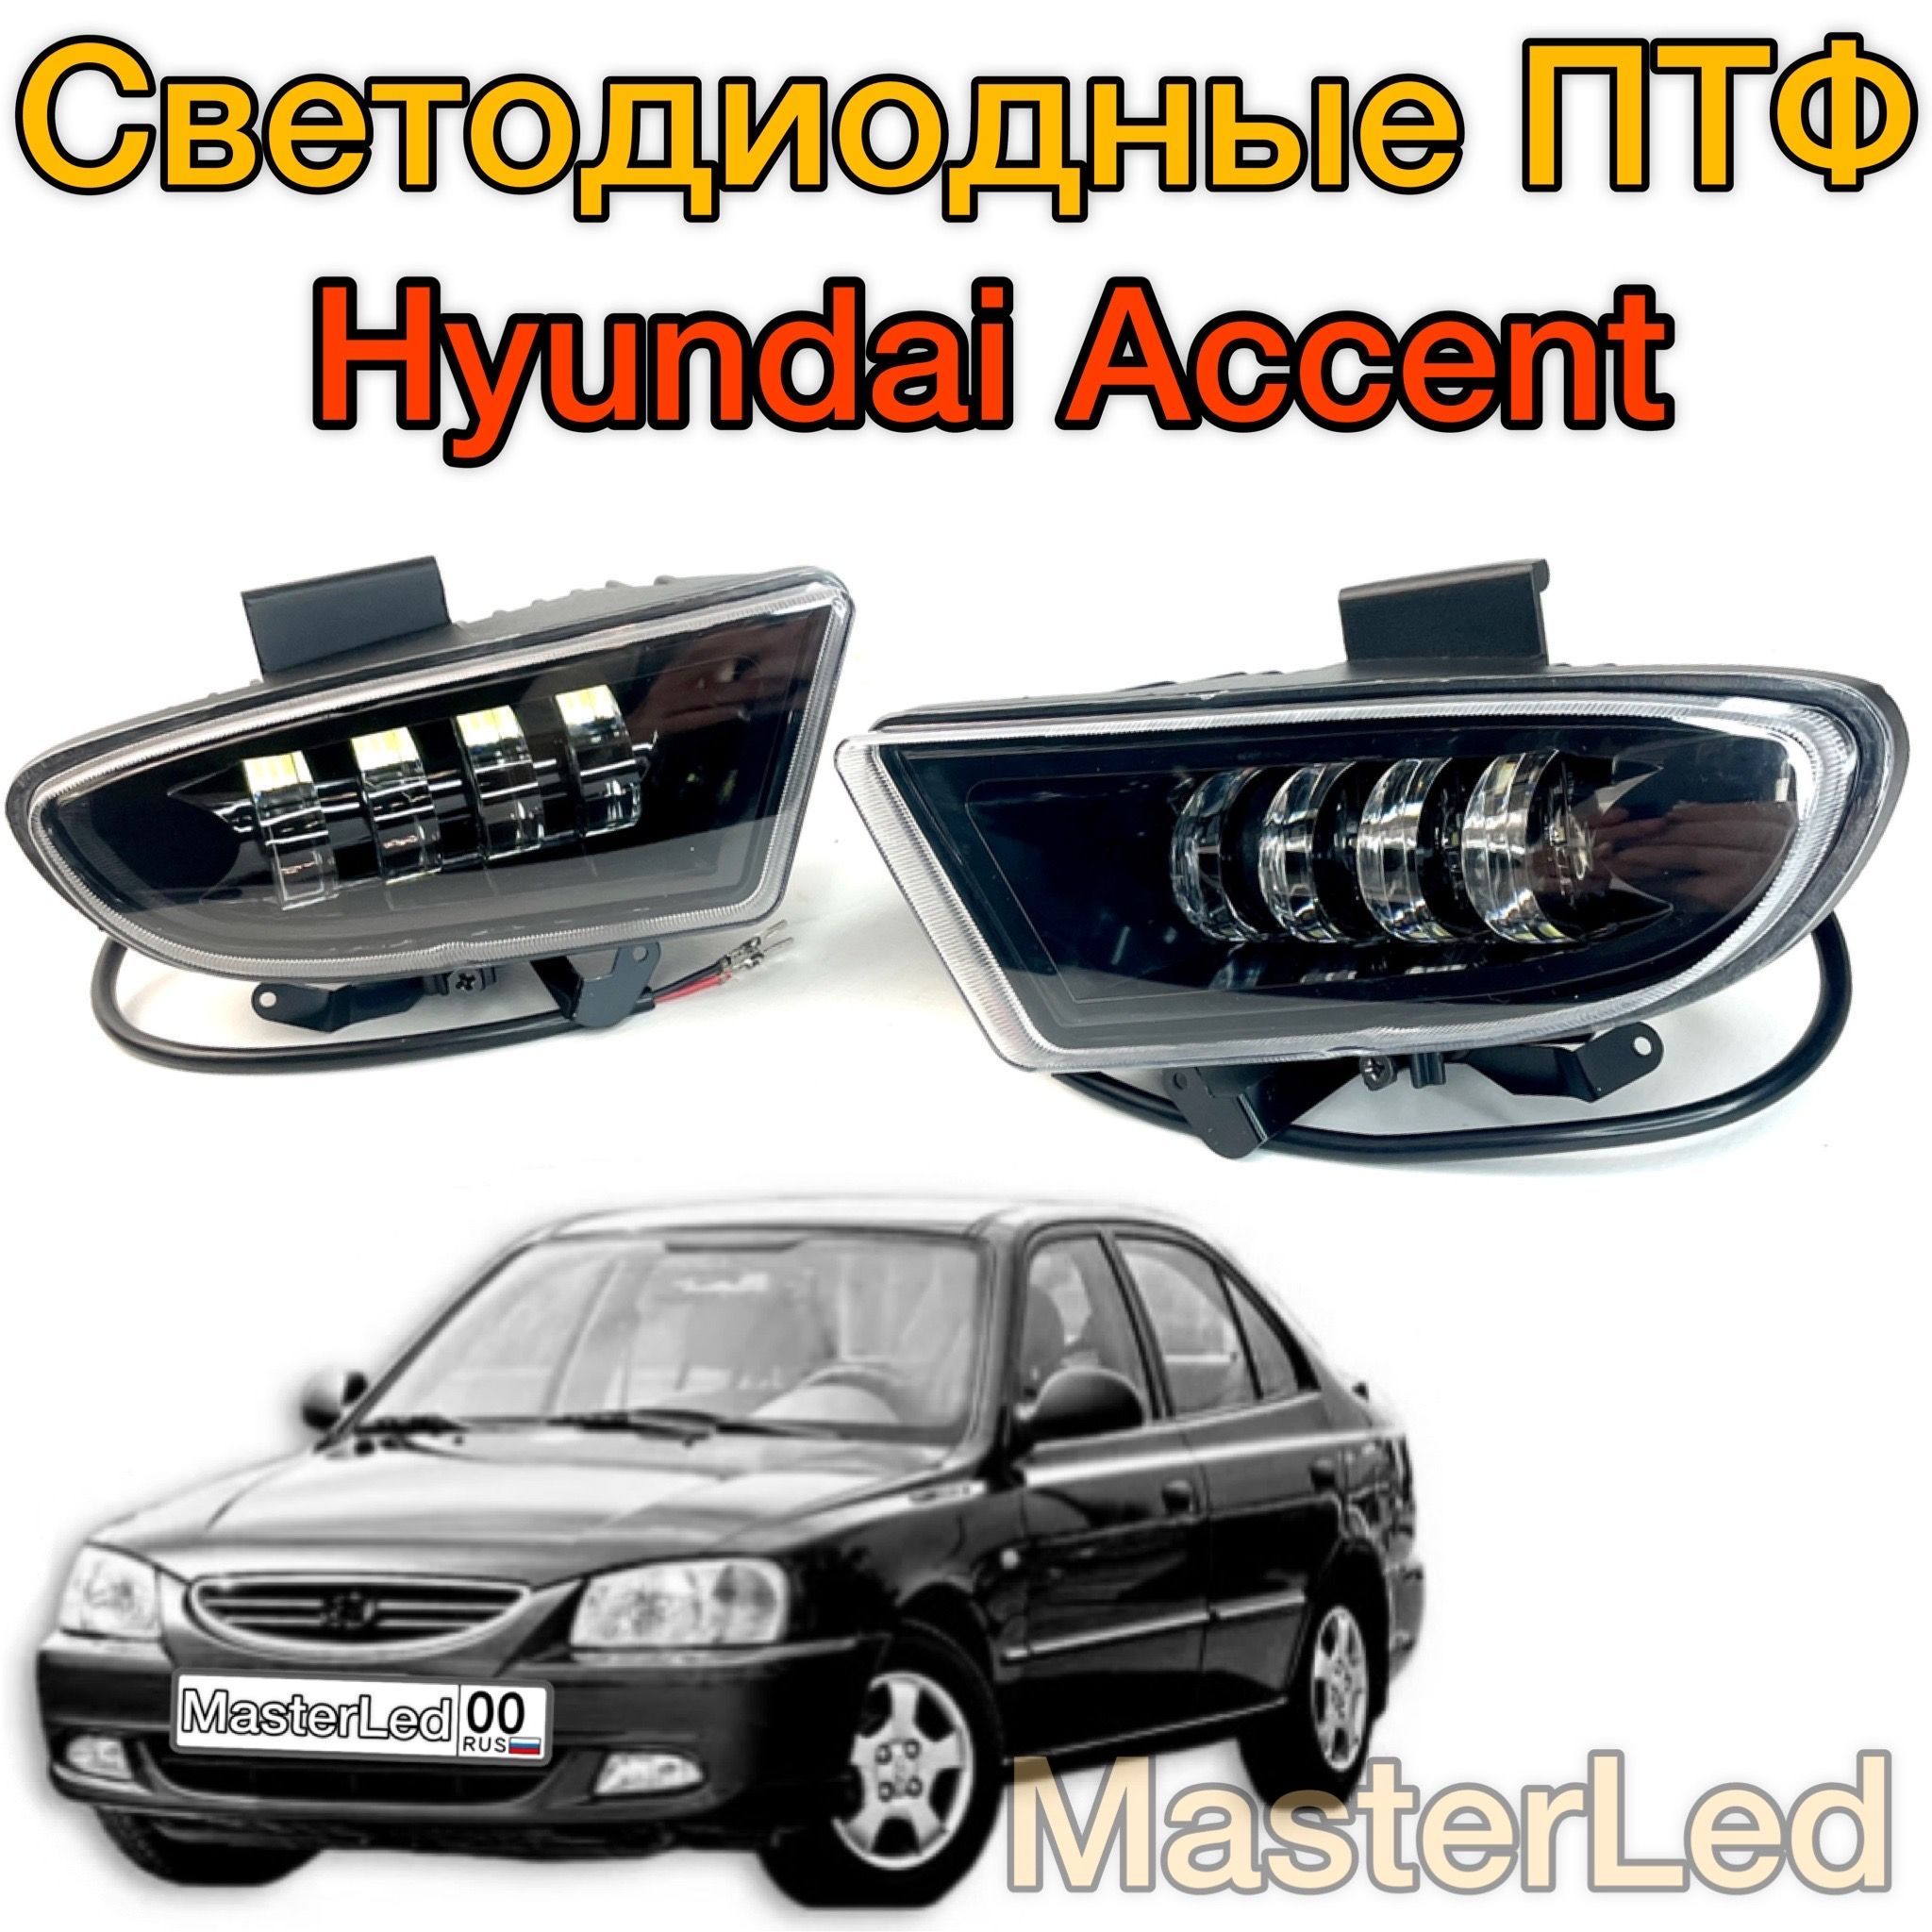 Регулировку света фар на Hyundai в Воронеже